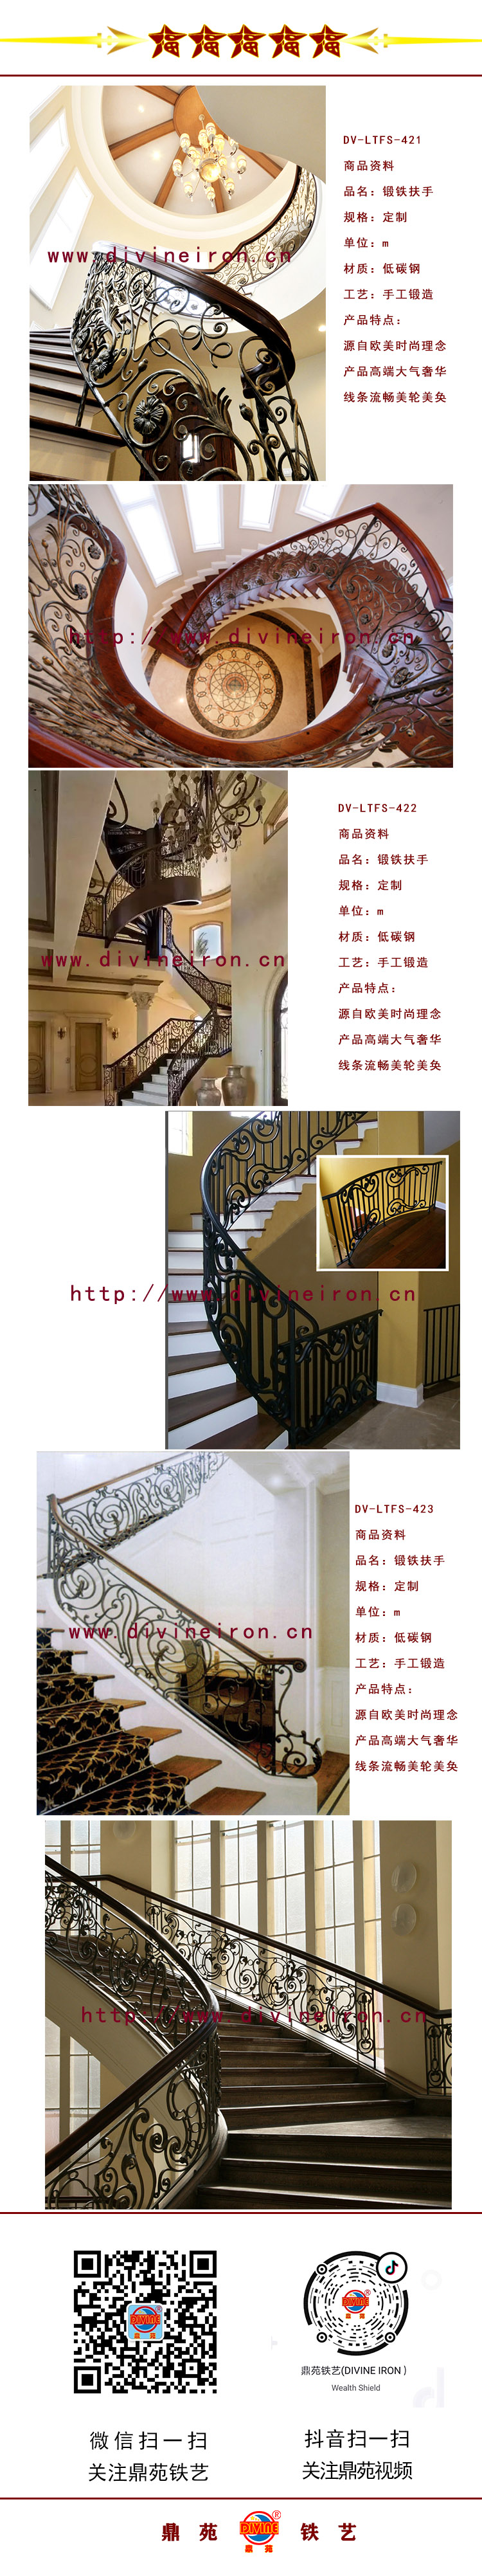 楼梯扶手详图1-4.jpg